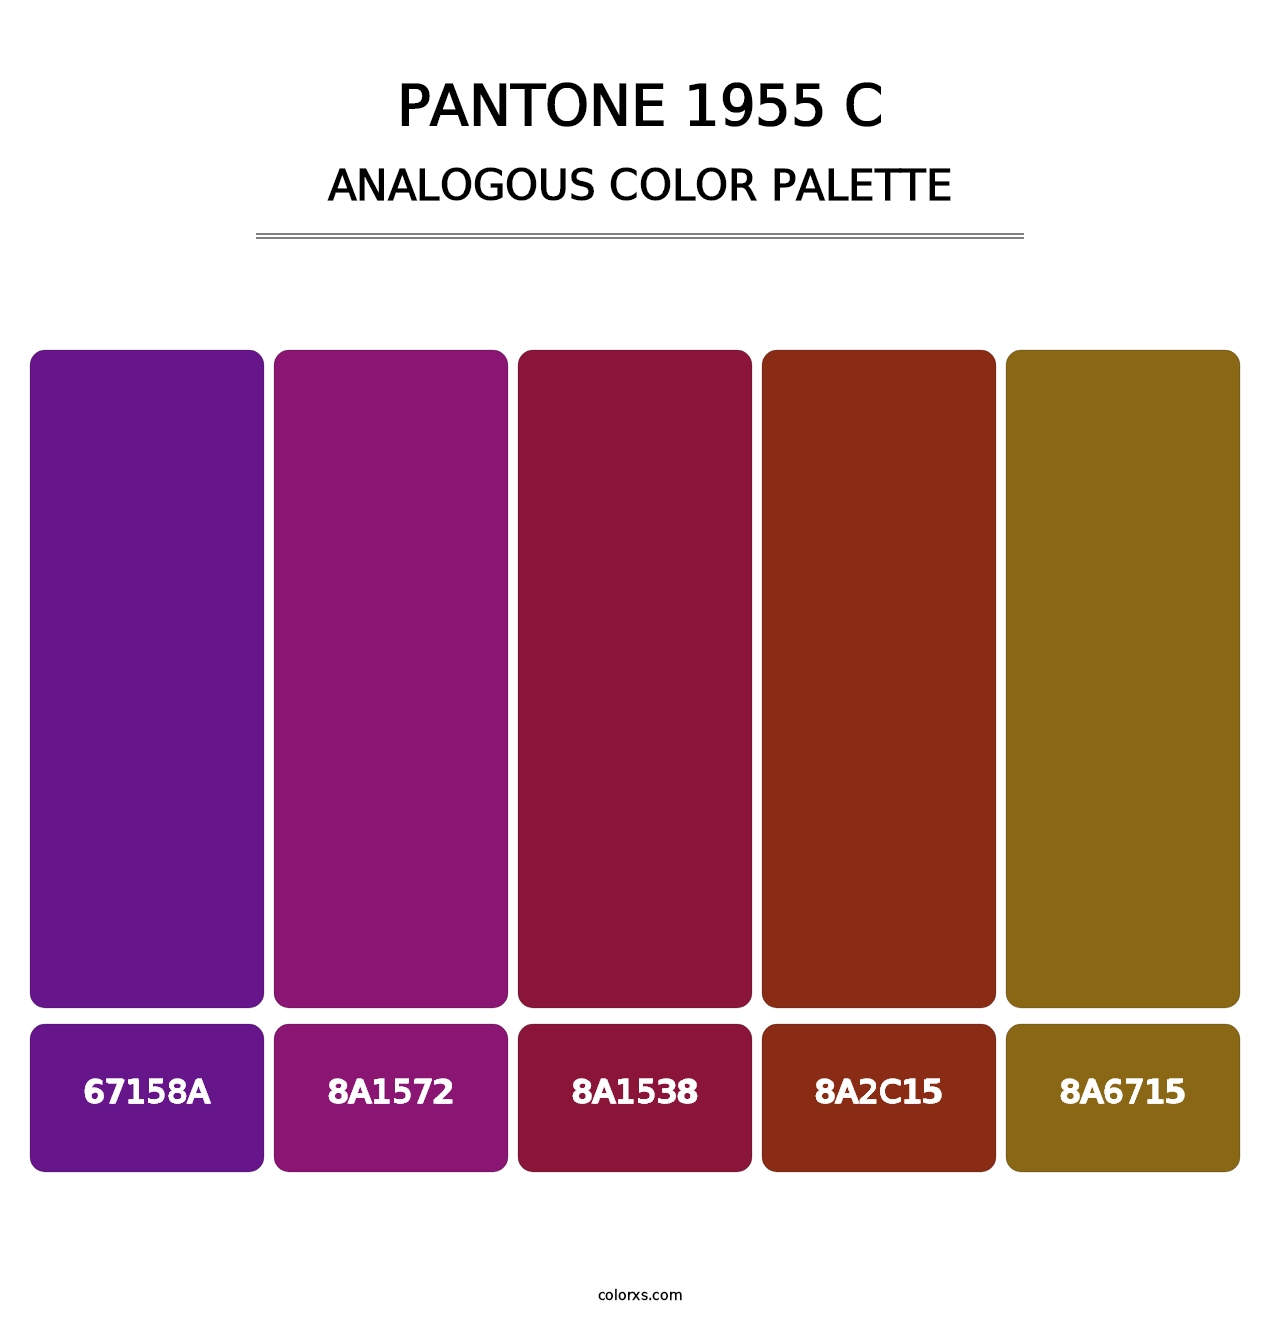 PANTONE 1955 C - Analogous Color Palette